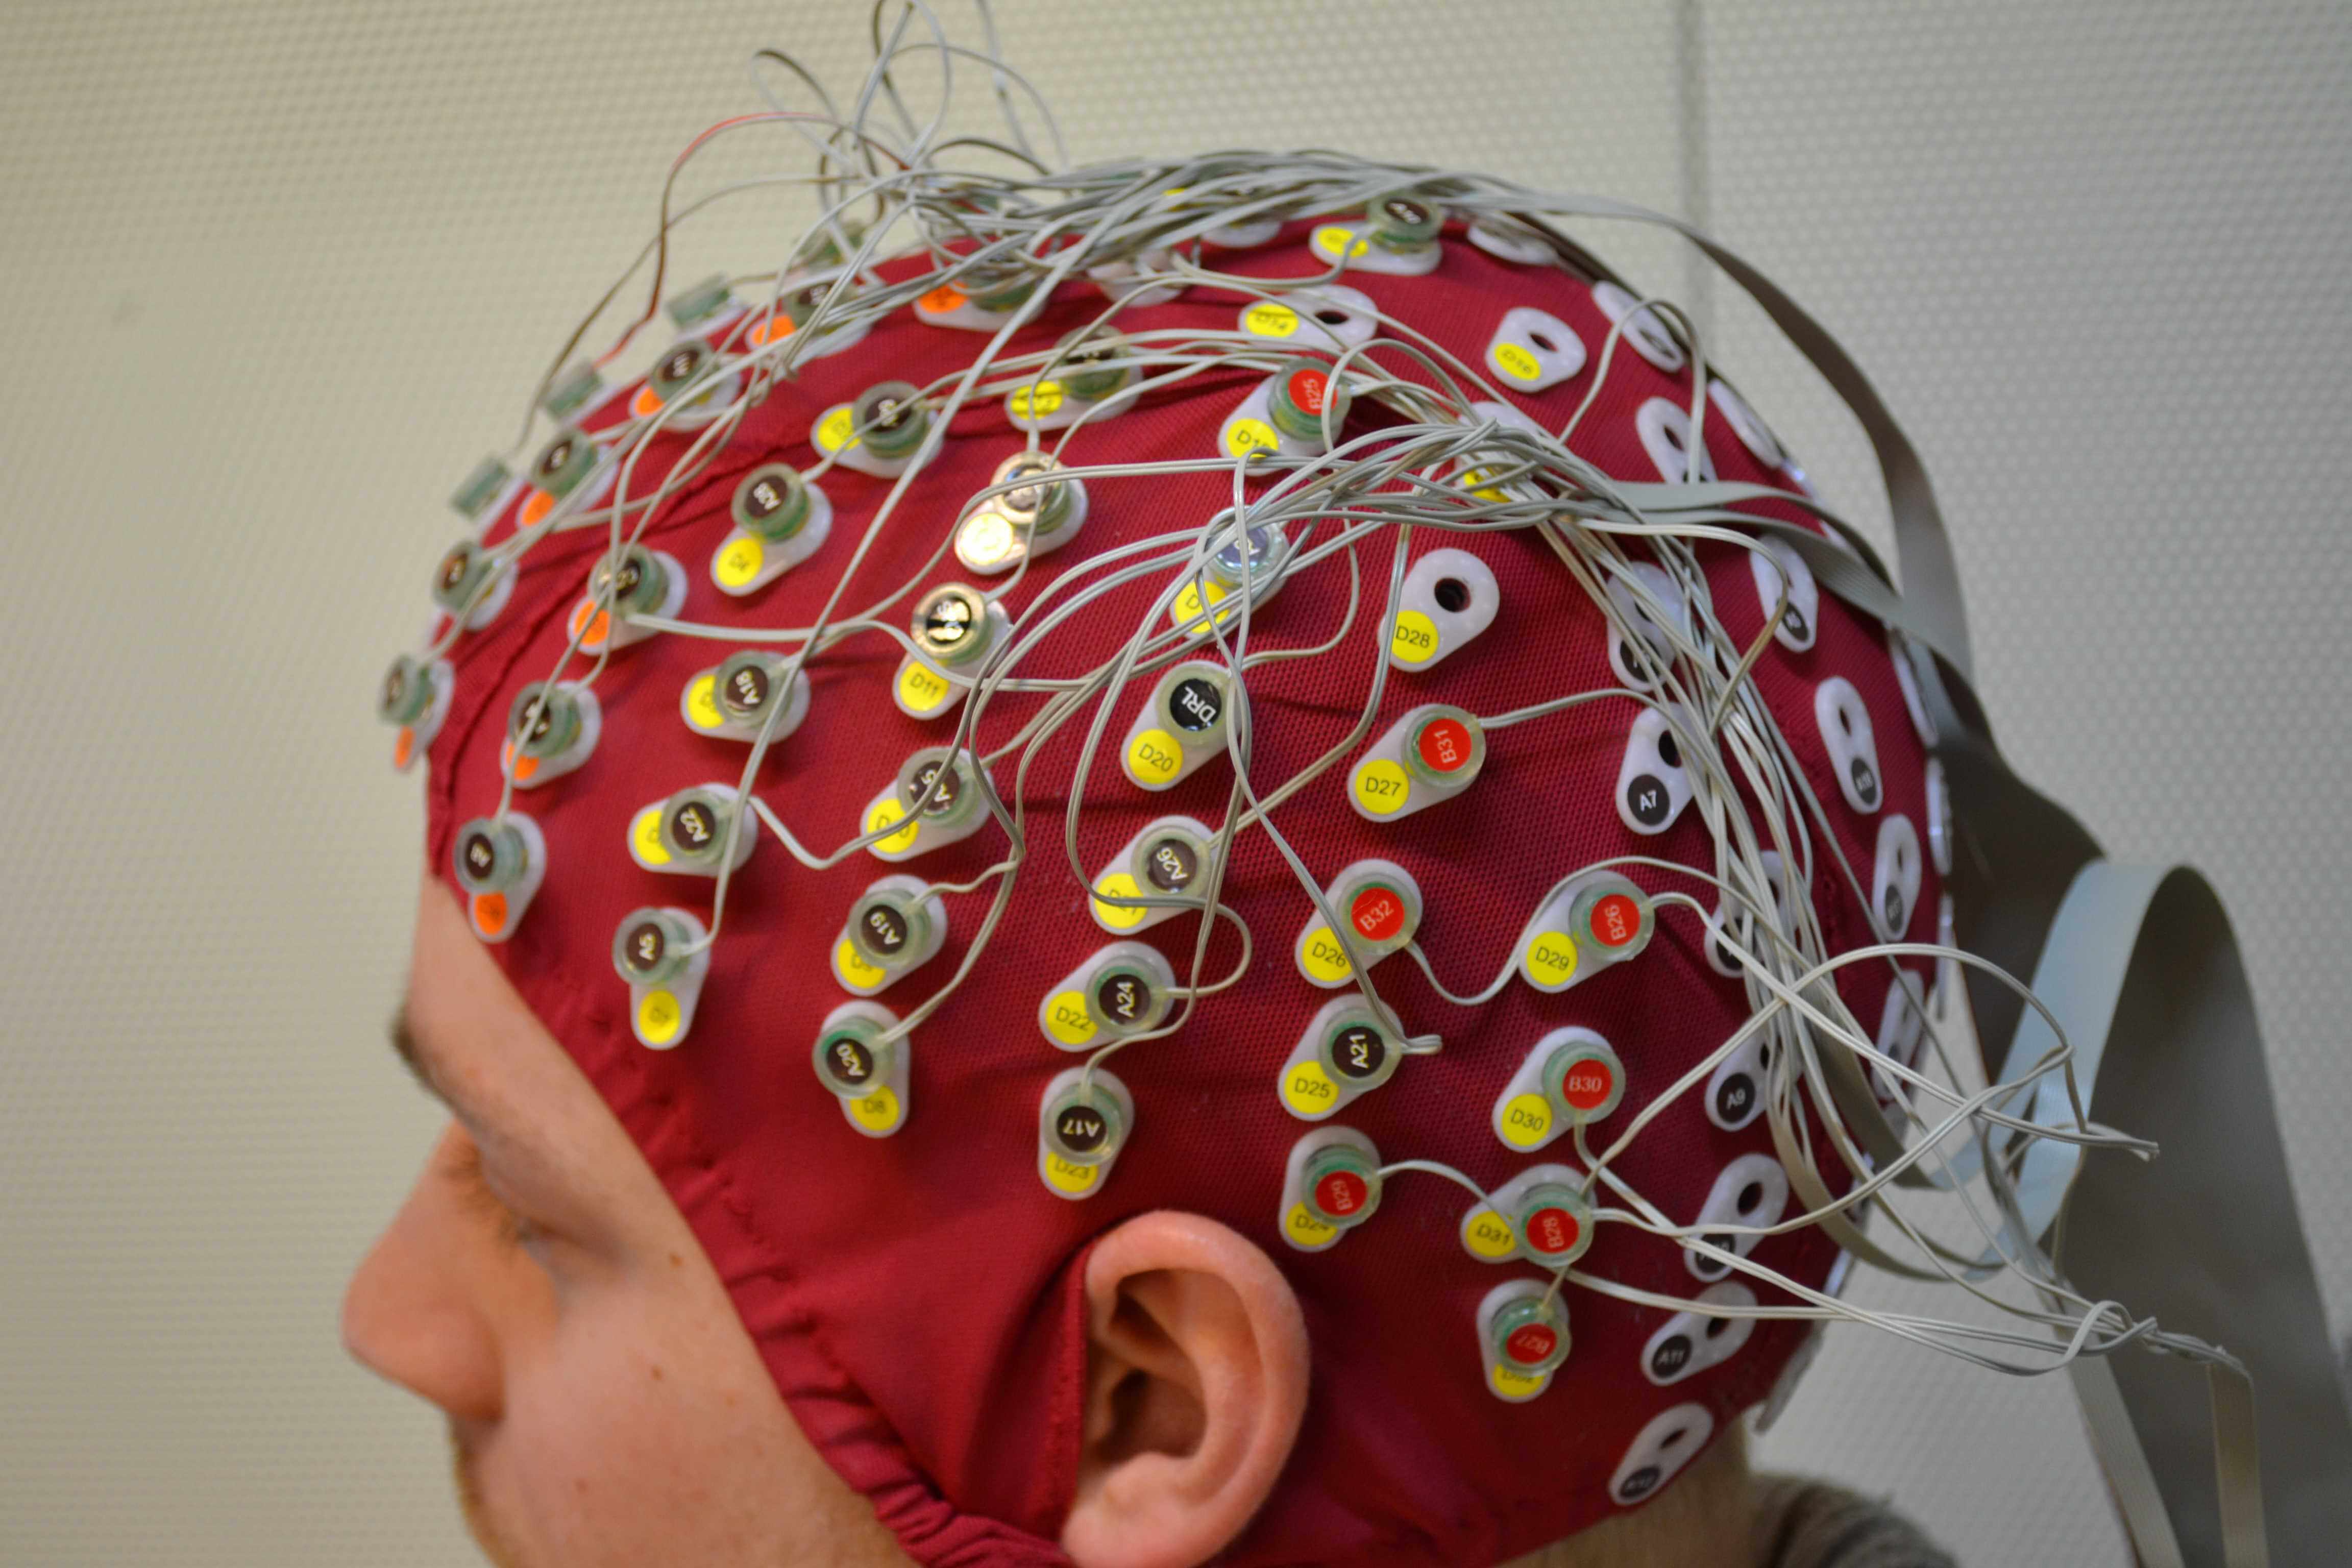 An EEG device on a participant's head.